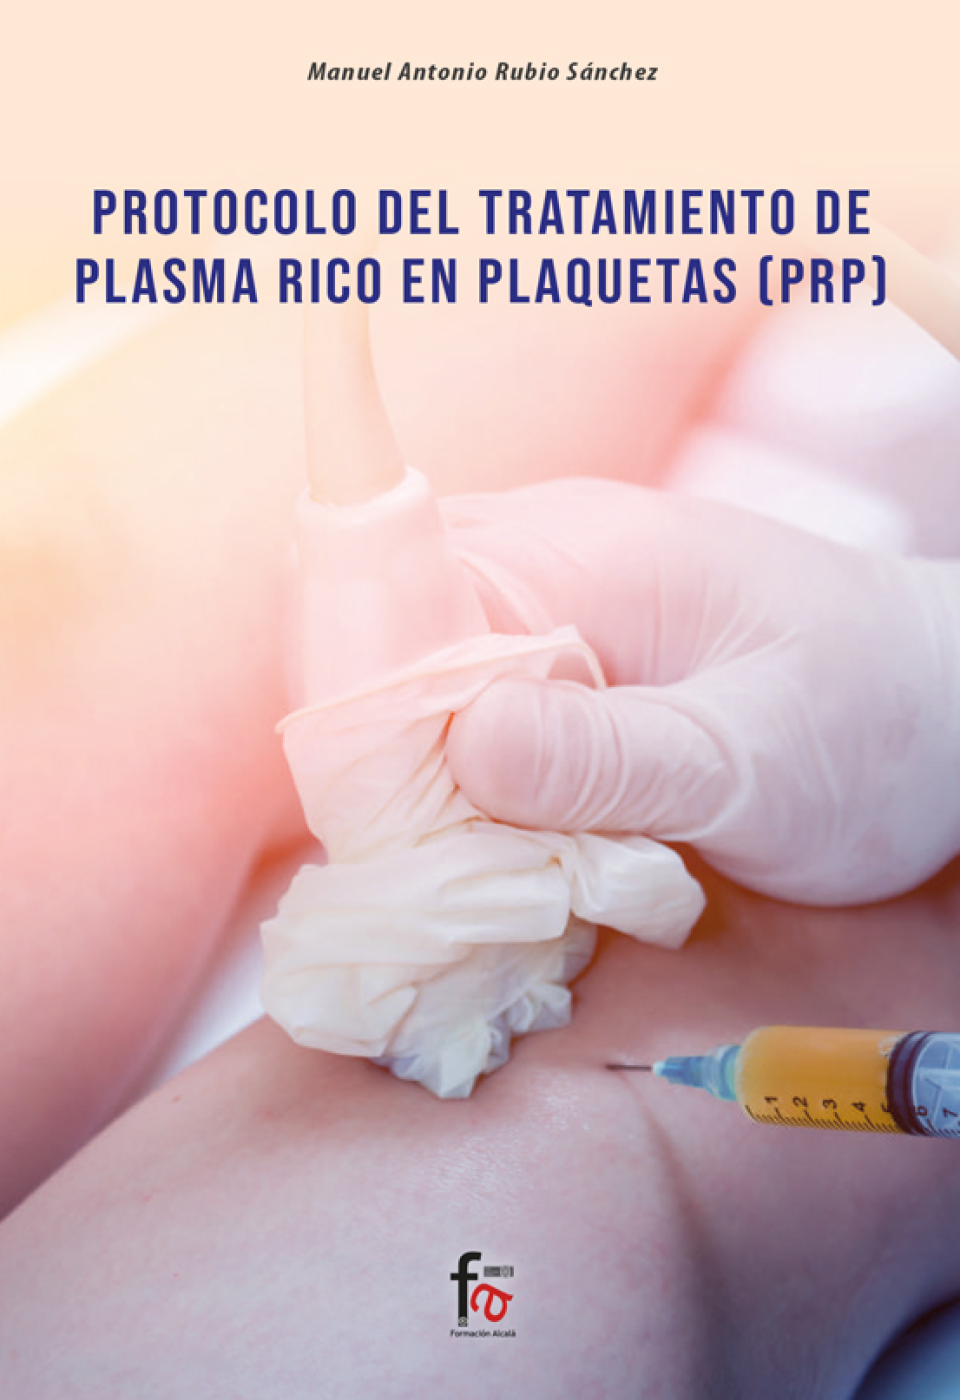 Platelet Rich Plasma Treatment Protocol - PRP